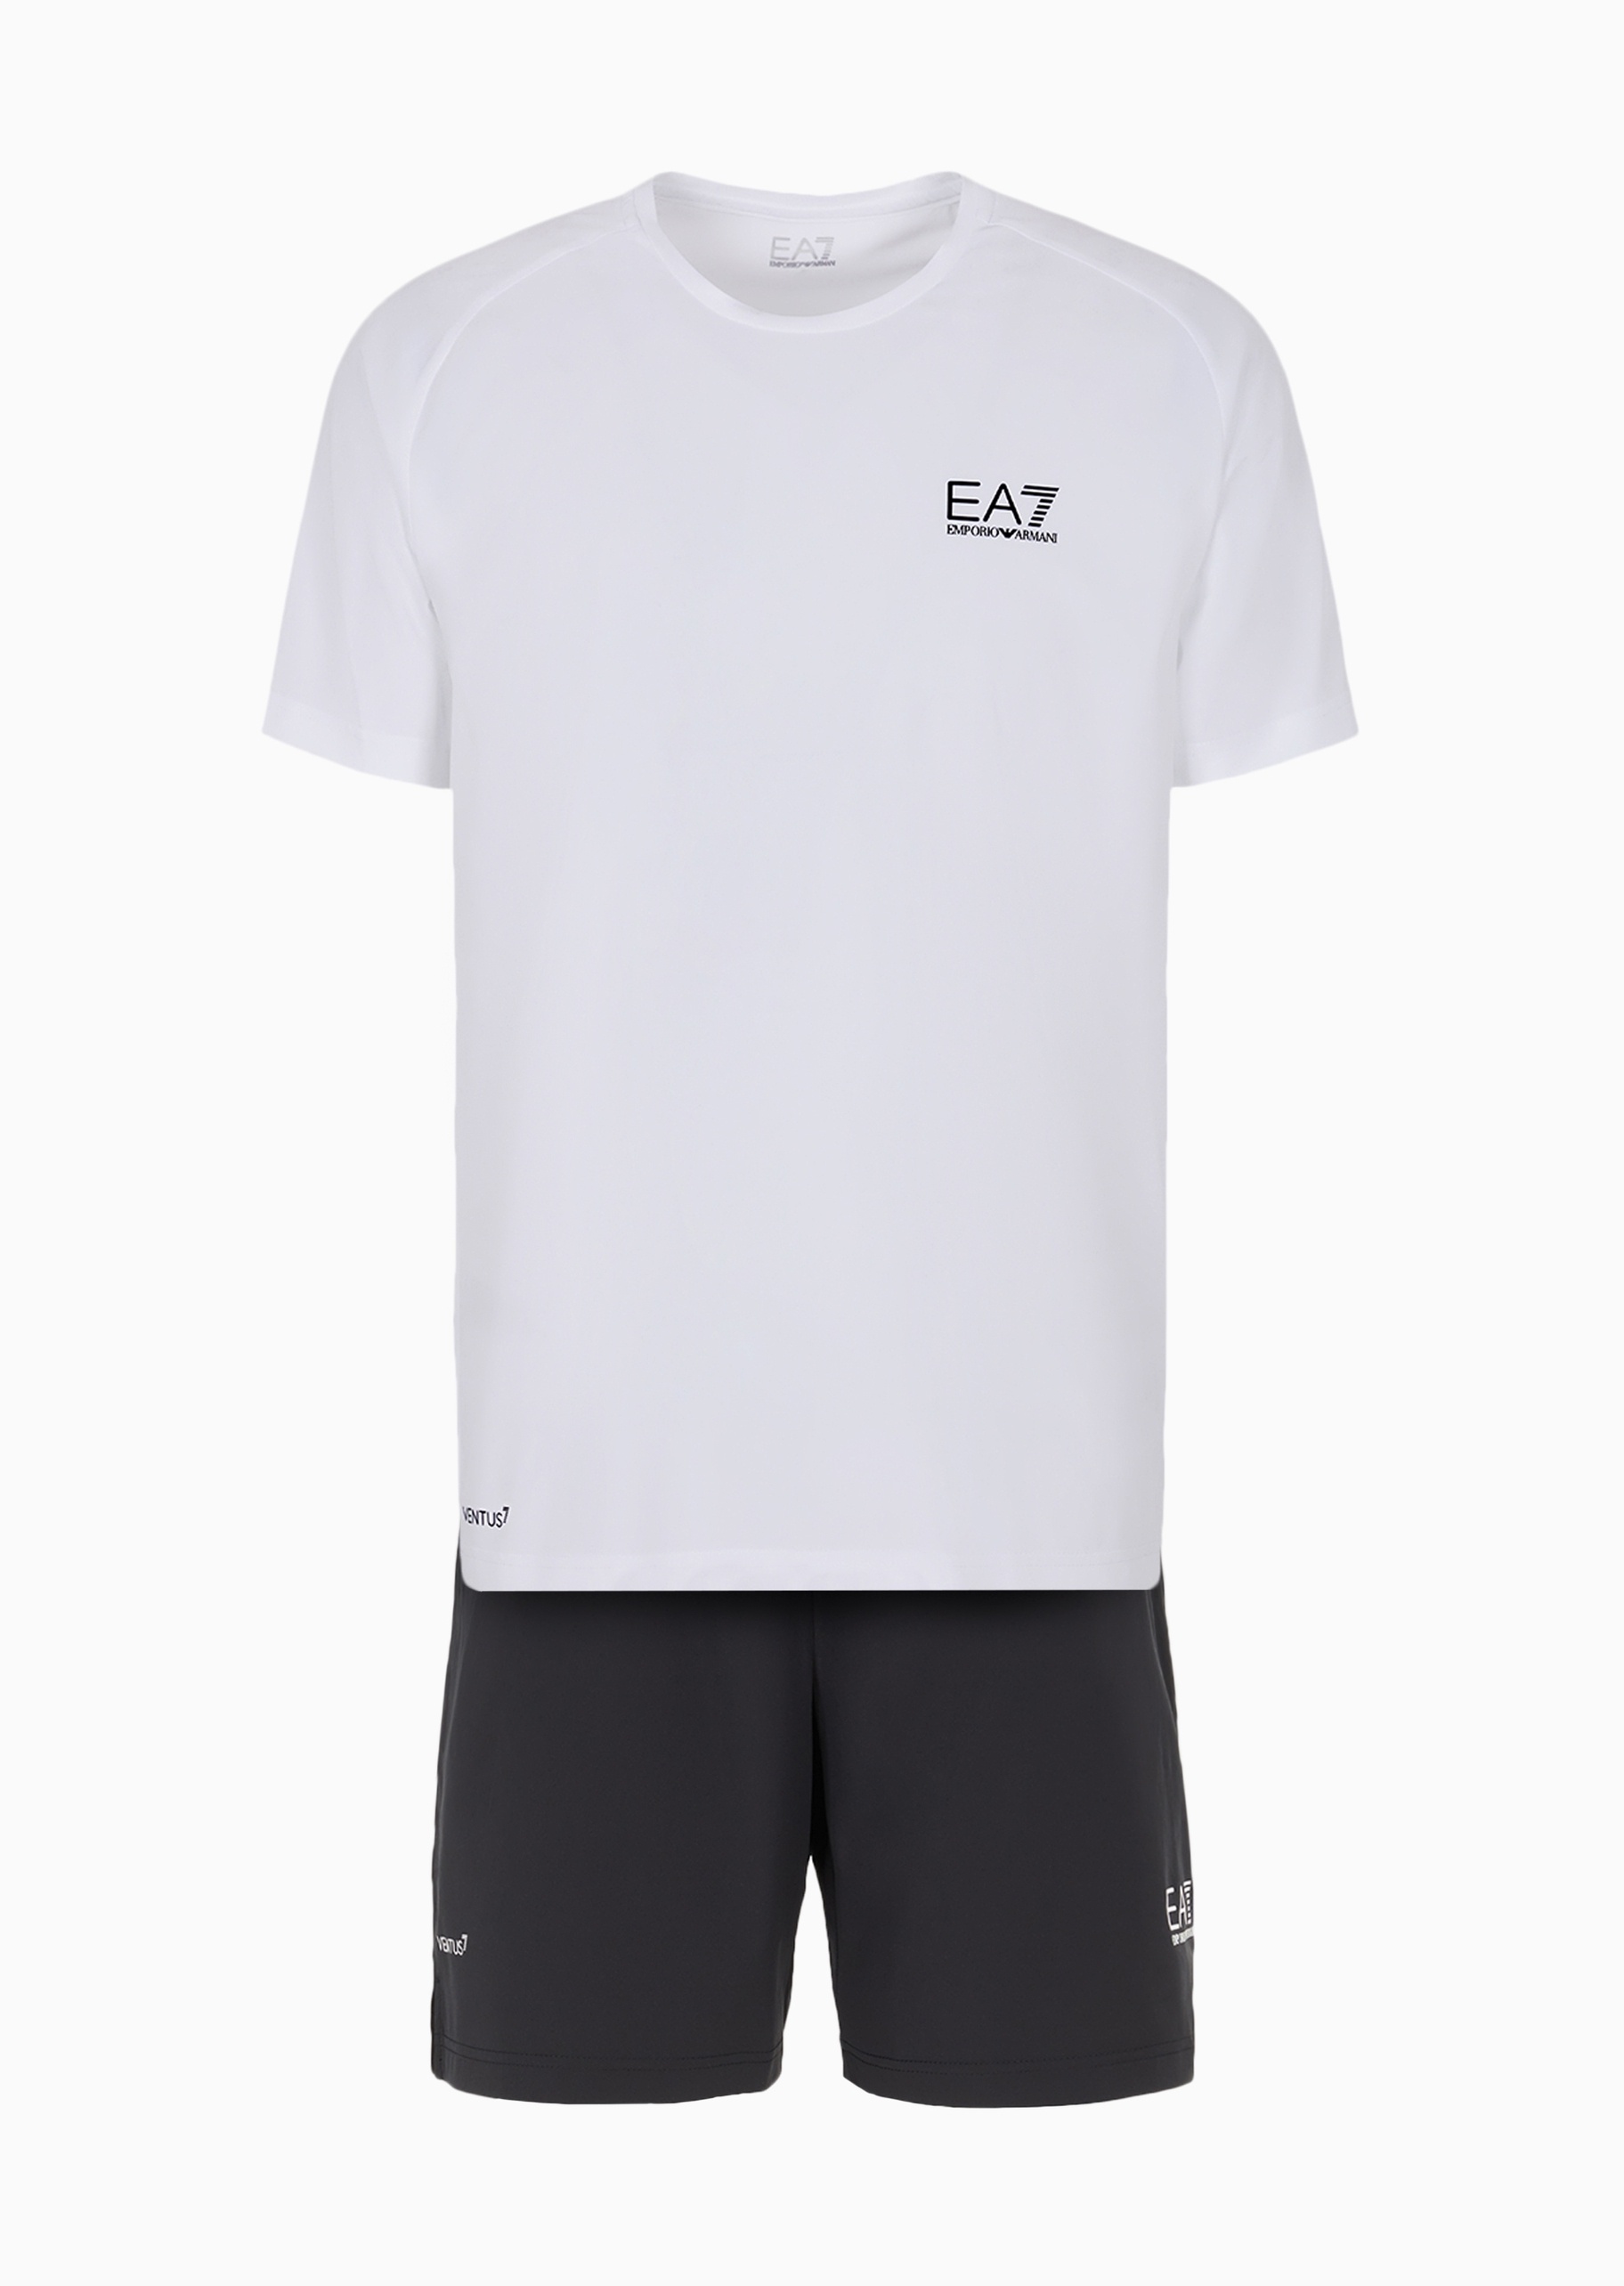 EA7 男士VENTUS7合身T恤跑步运动套装